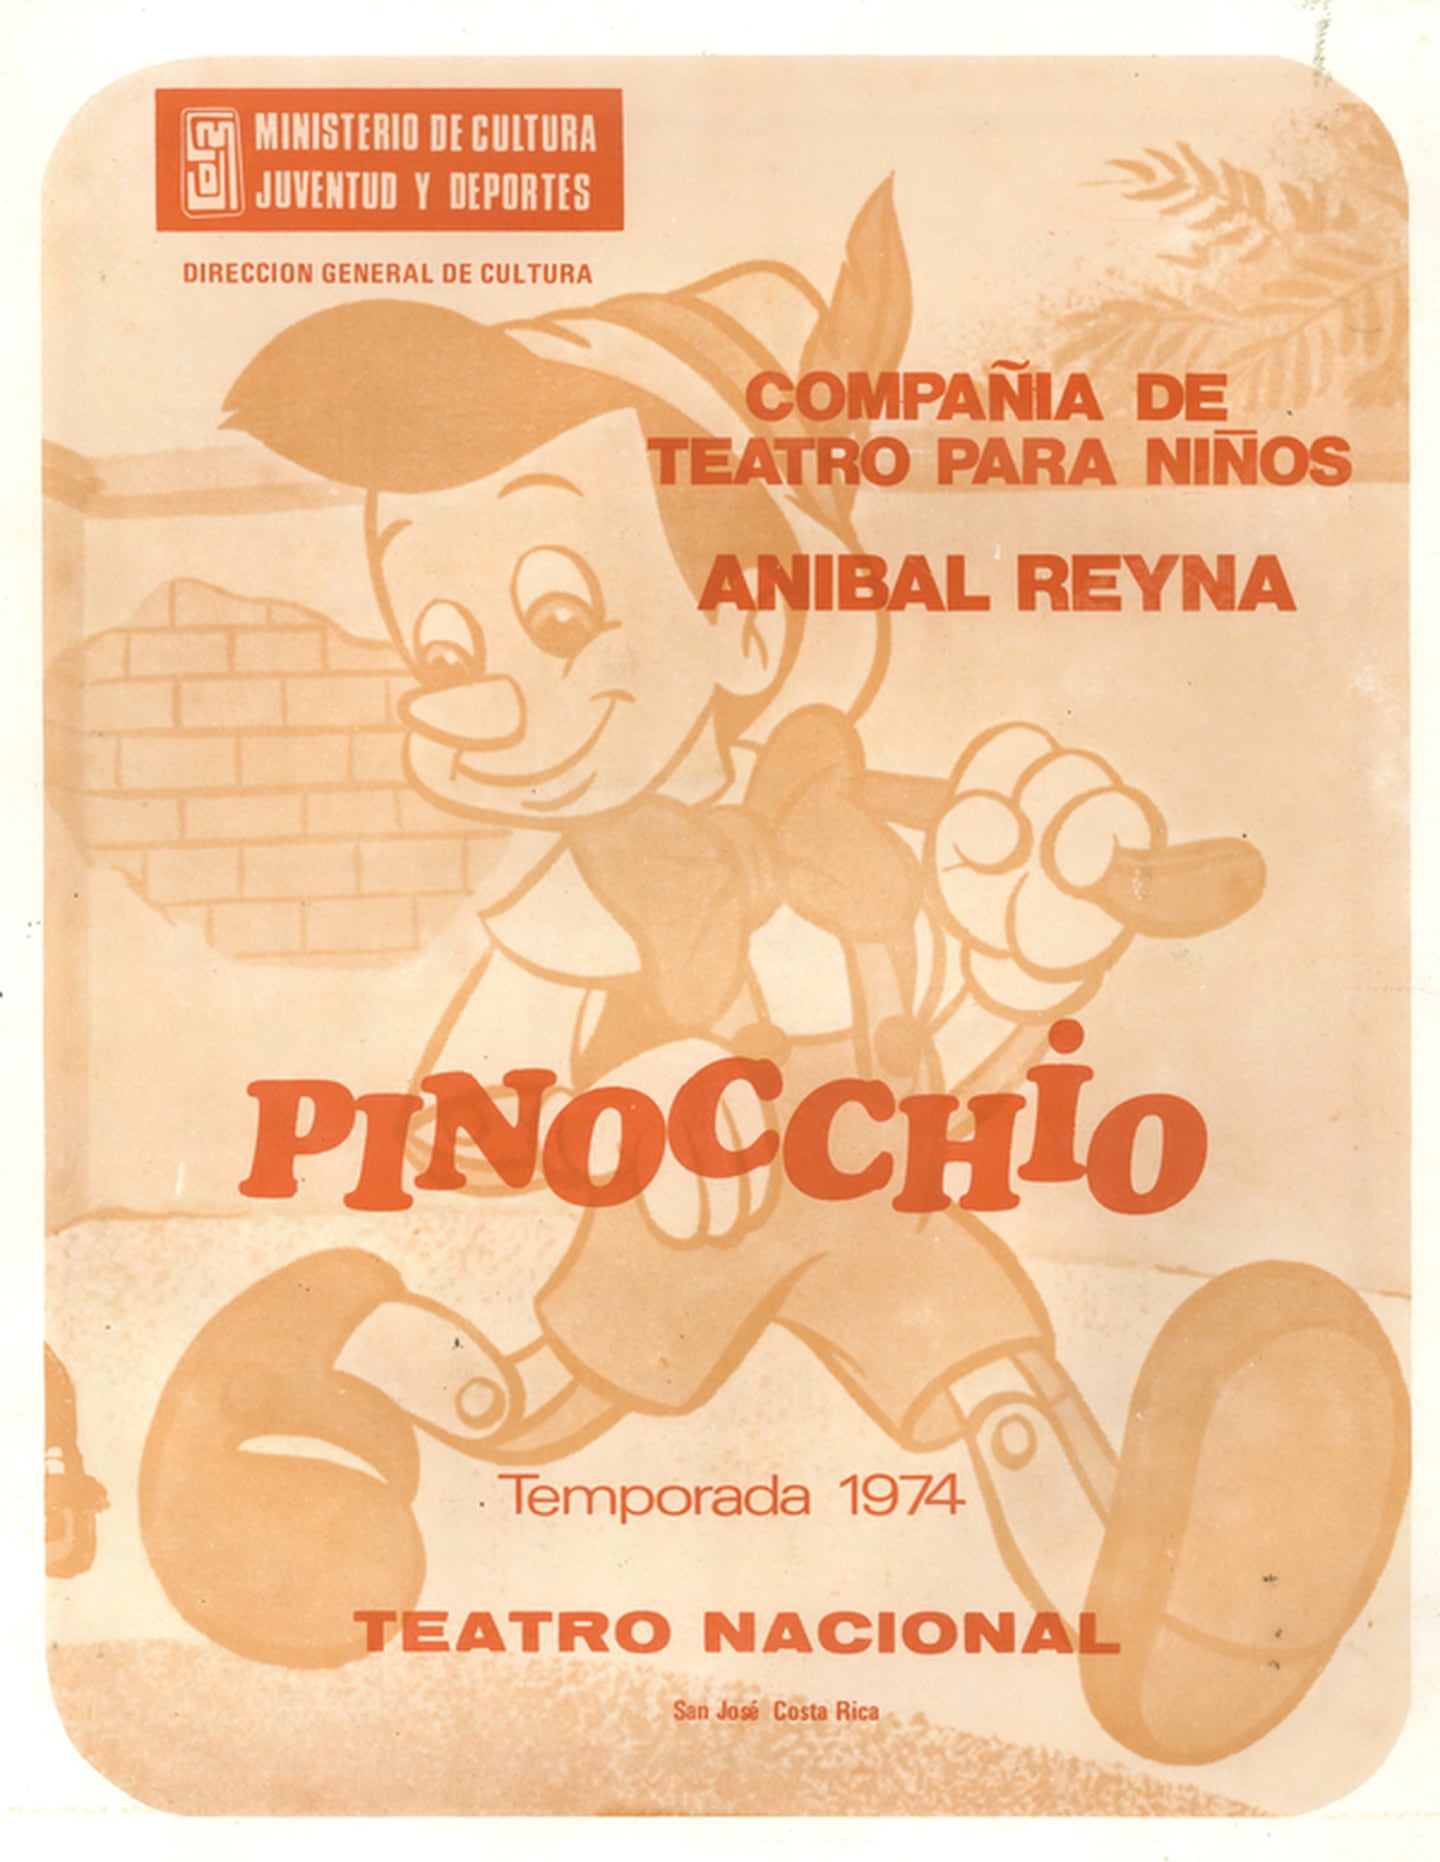 Programa de mano de la obra «Pinocchio», Compañía de Teatro para Niños Aníbal Reyna, Compañía Nacional de Teatro y Teatro Nacional, 1974.